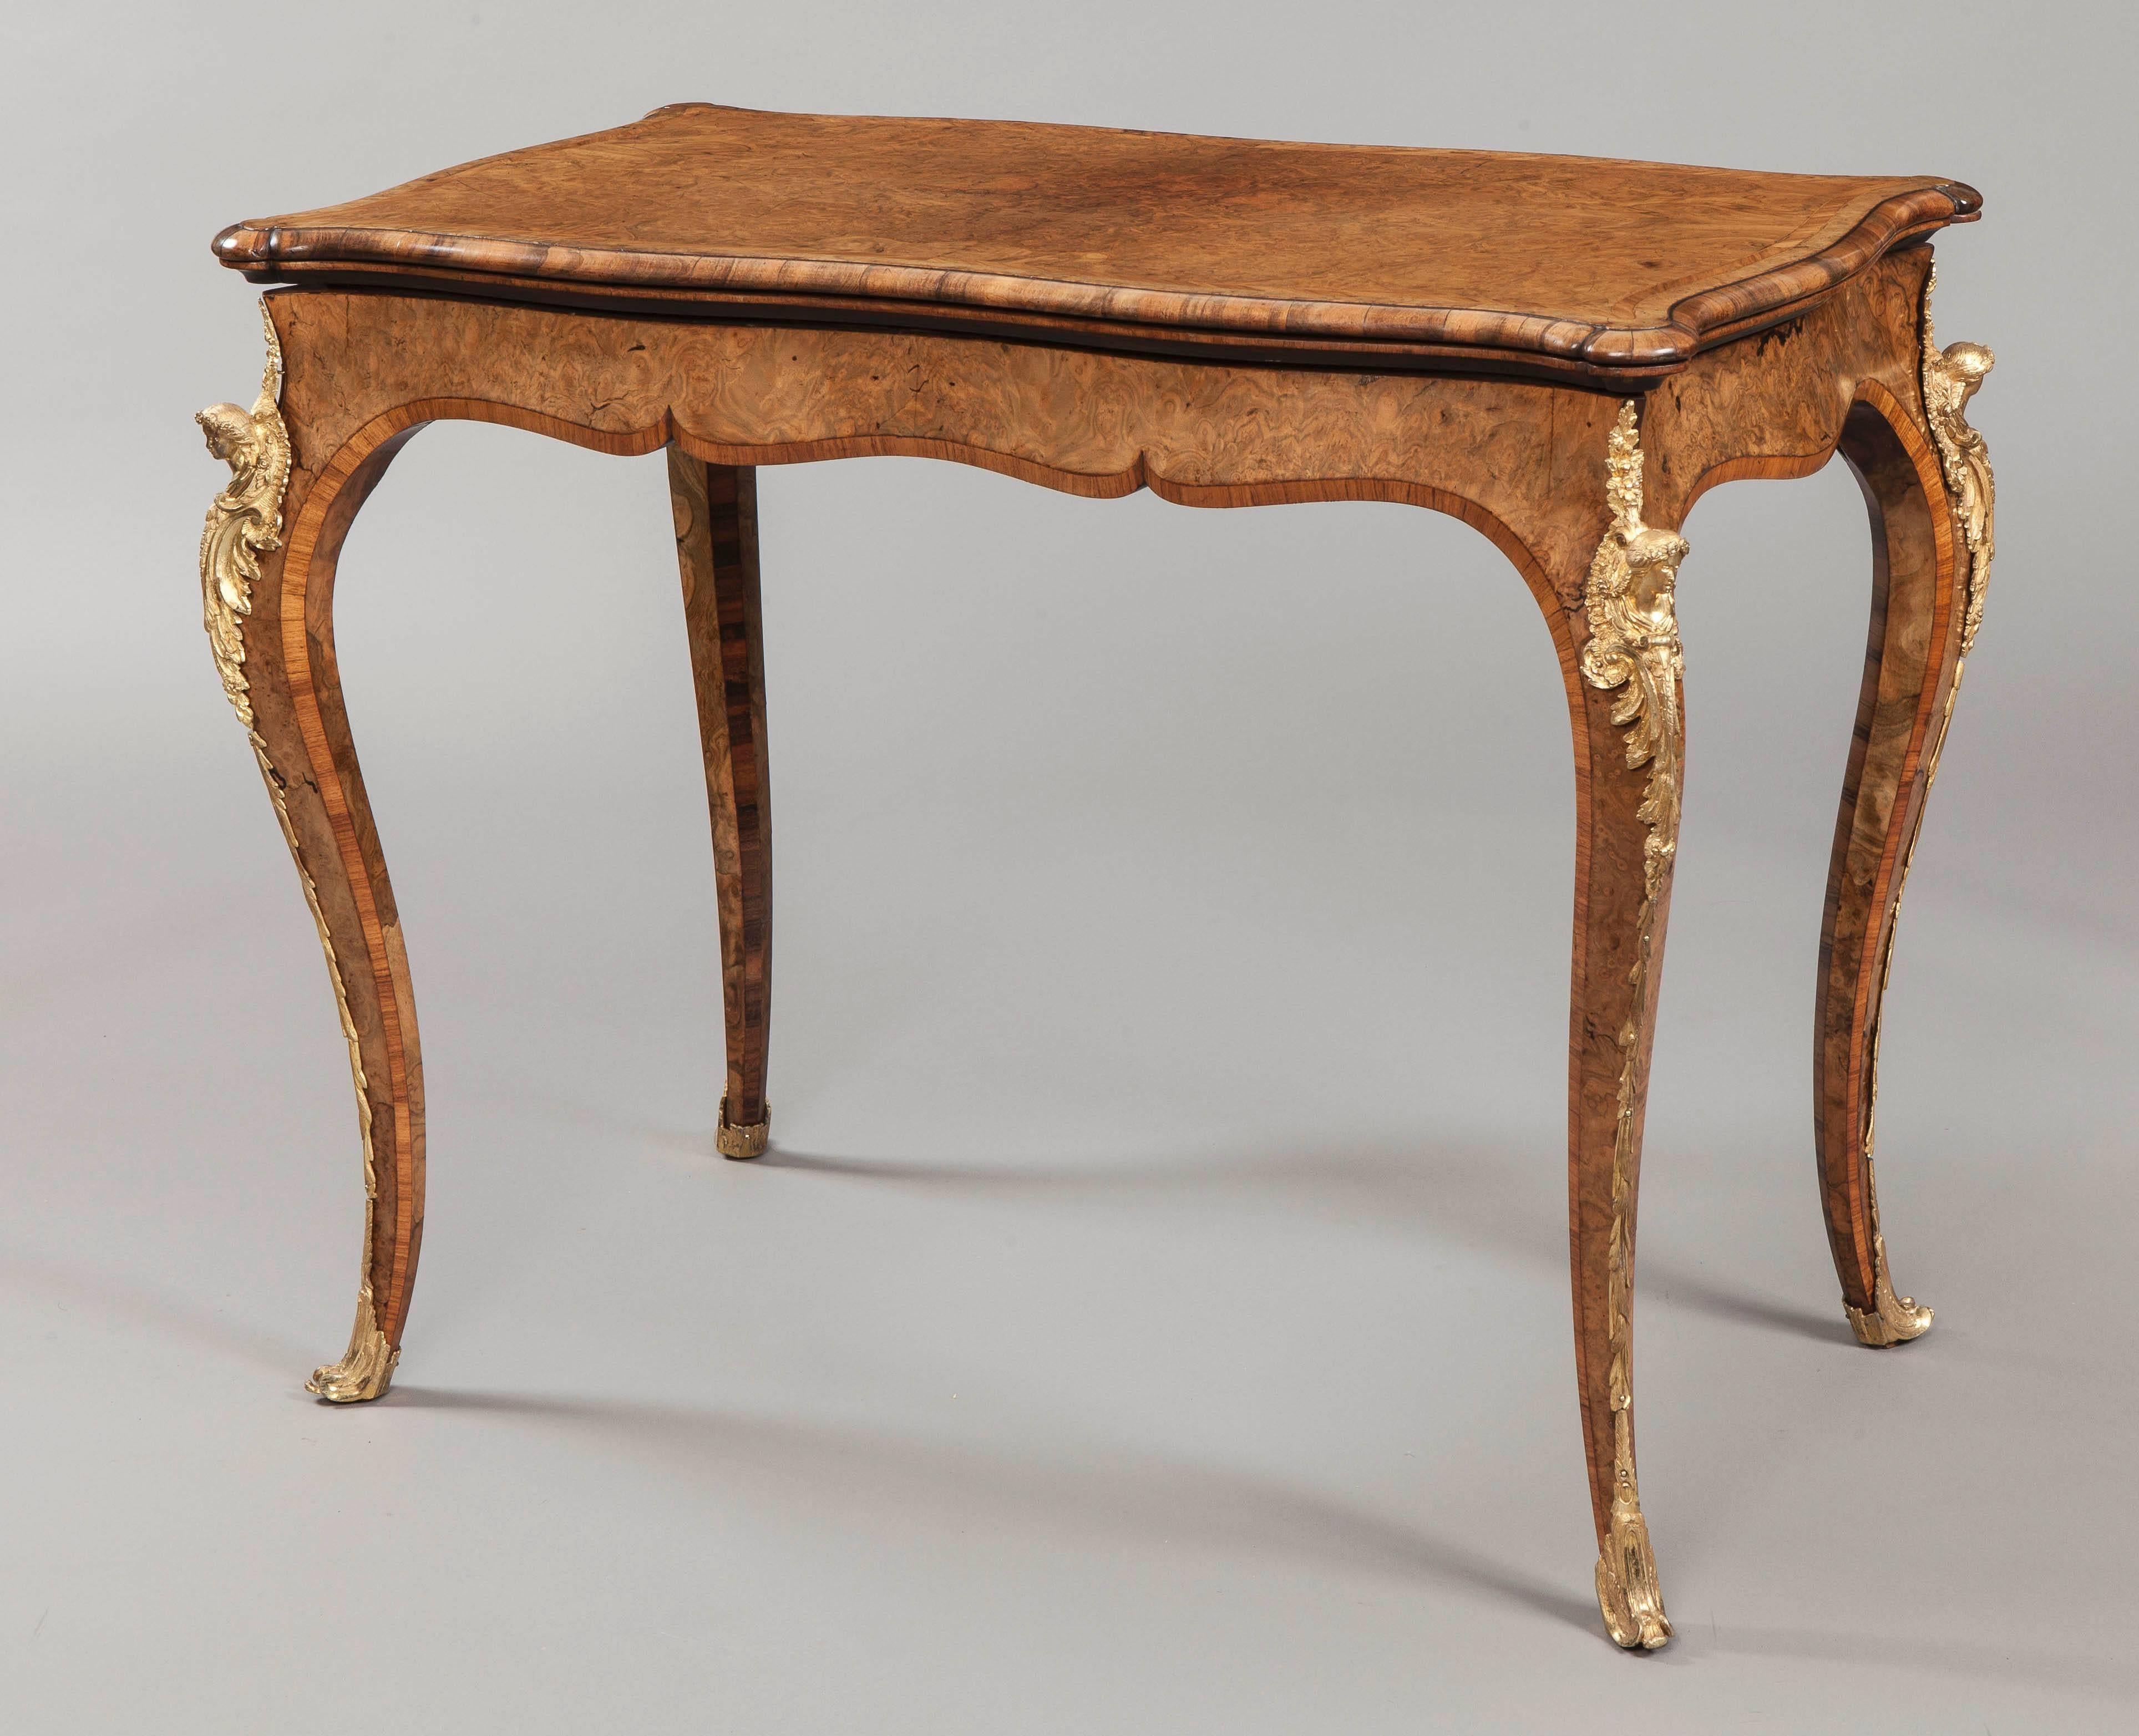 Une paire de tables à cartes très proche, fermement attribuée à Gillows de Lancaster.

Conçu à la manière Louis XV, et construit à partir d'une ronce de noyer circassien finement grainée, avec des bandes transversales en bois de roi et des cordes